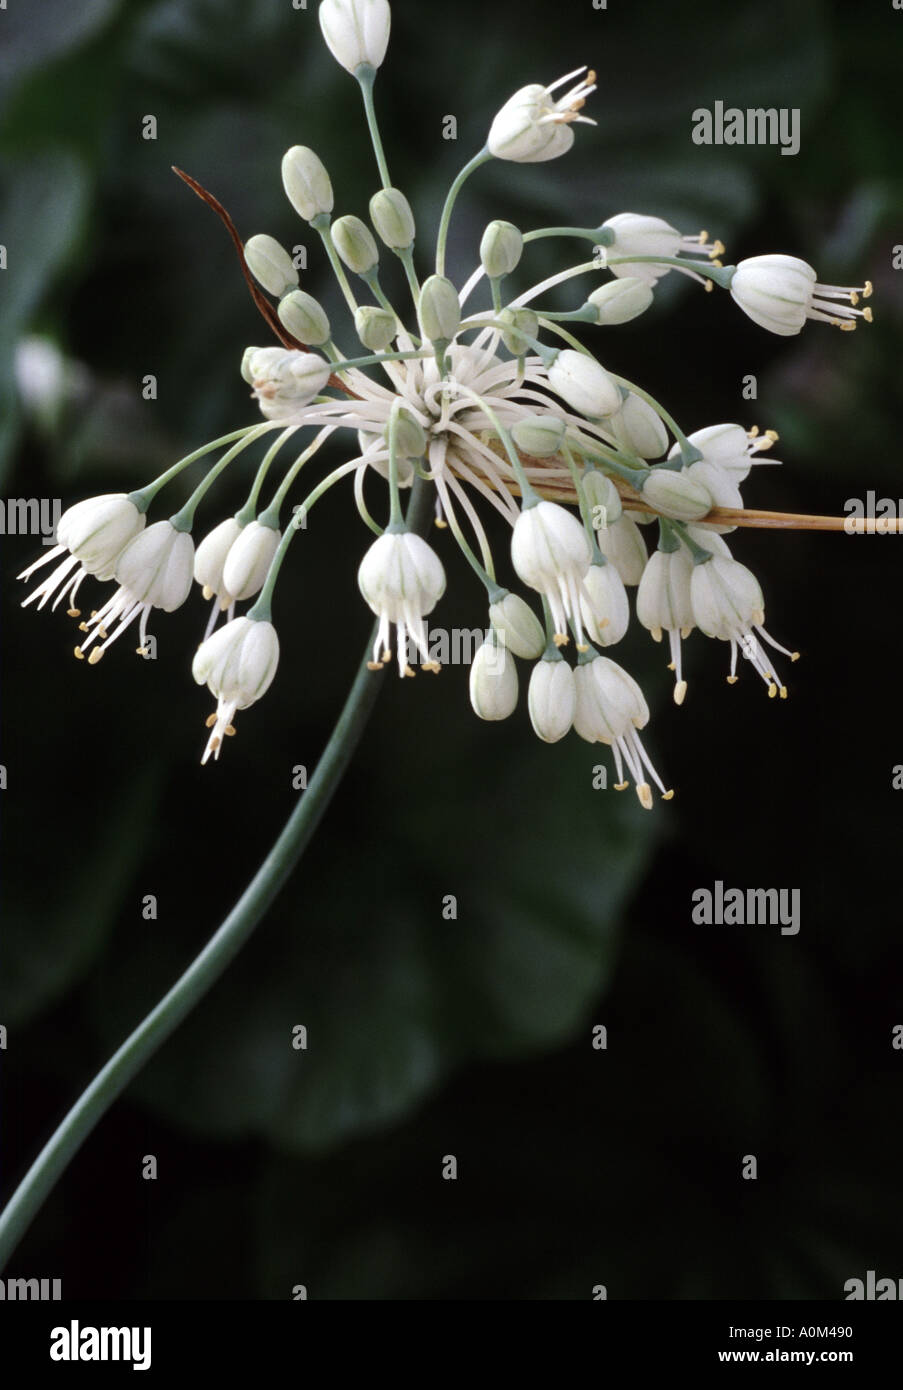 Allium carinatum pulchellum forma album. AGM Ornamental Onion Stock Photo